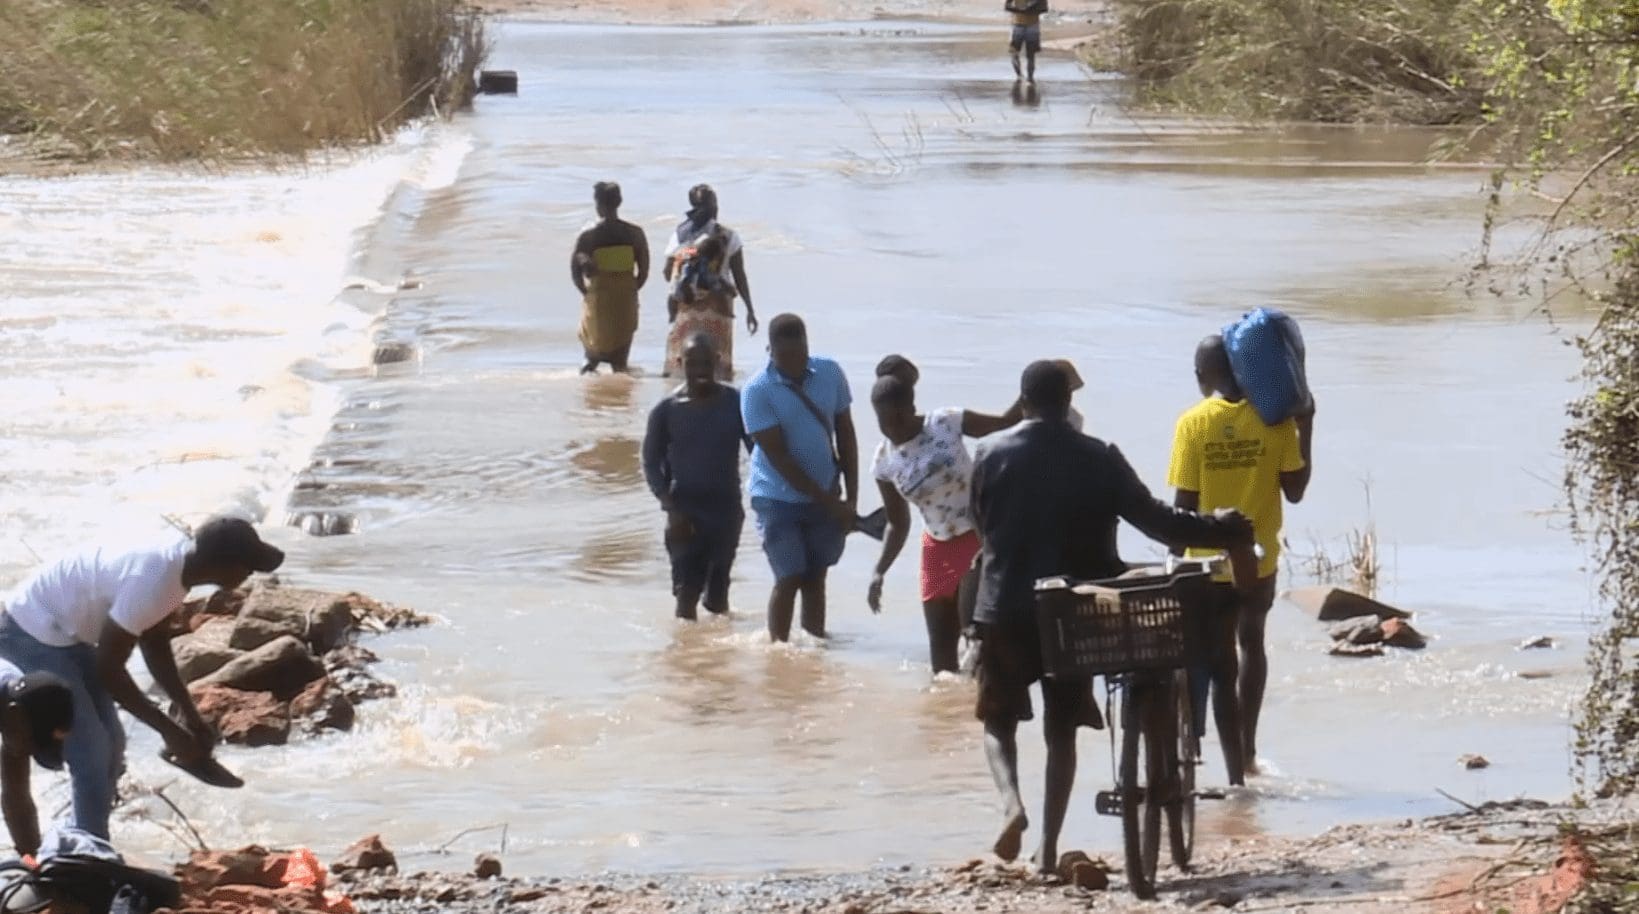 Moradores arriscam-se ao atravessar o rio a pé em Boane